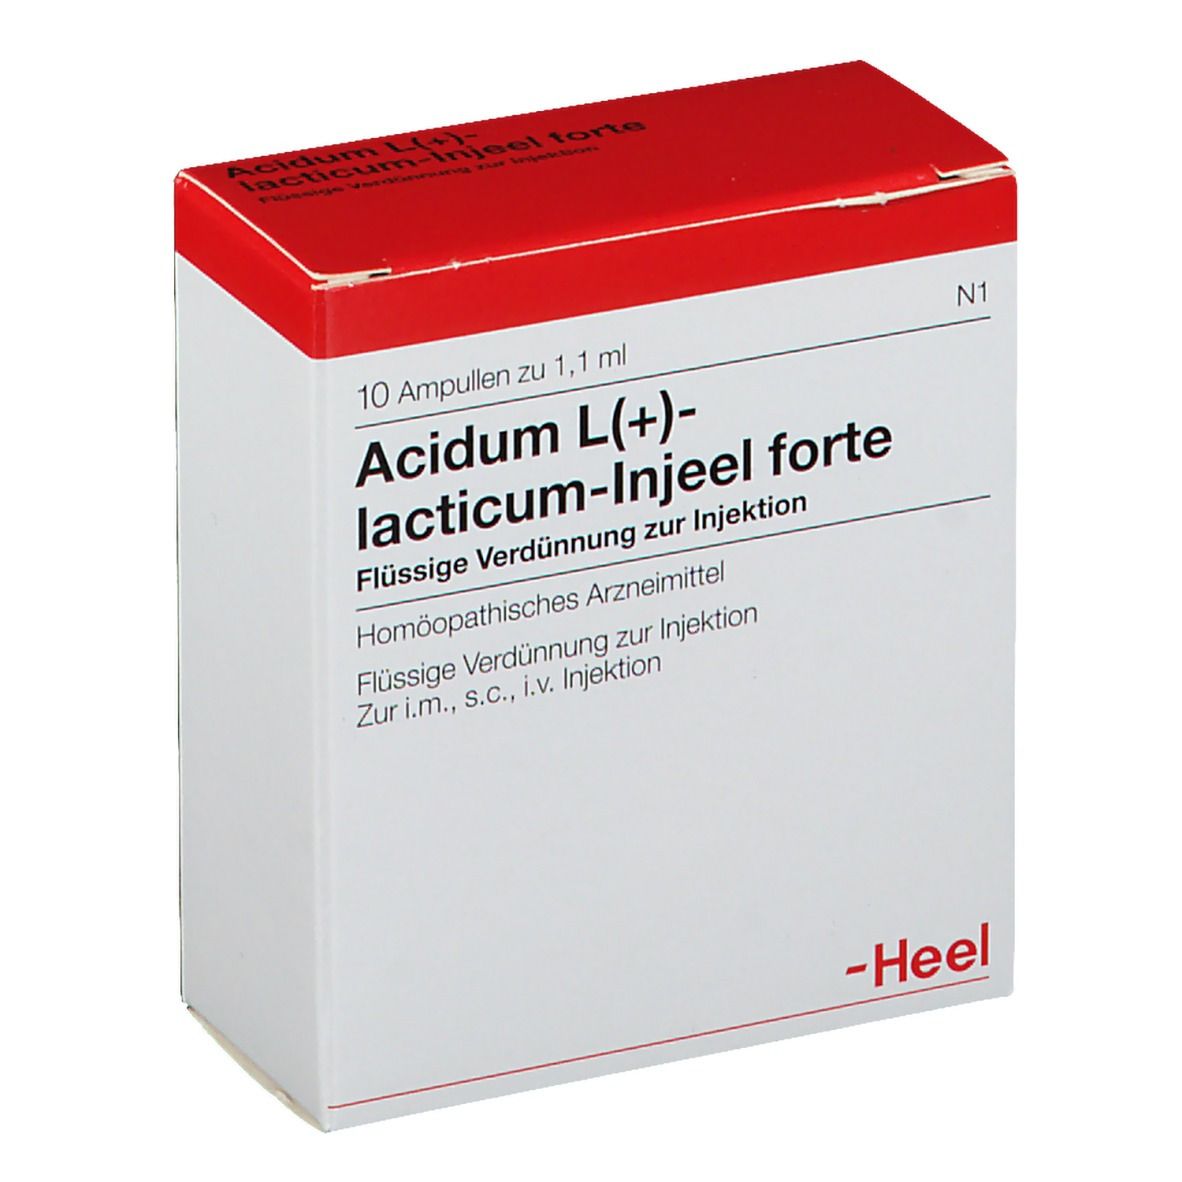 Acidum L(+)-lacticum-Injeel® forte Ampullen